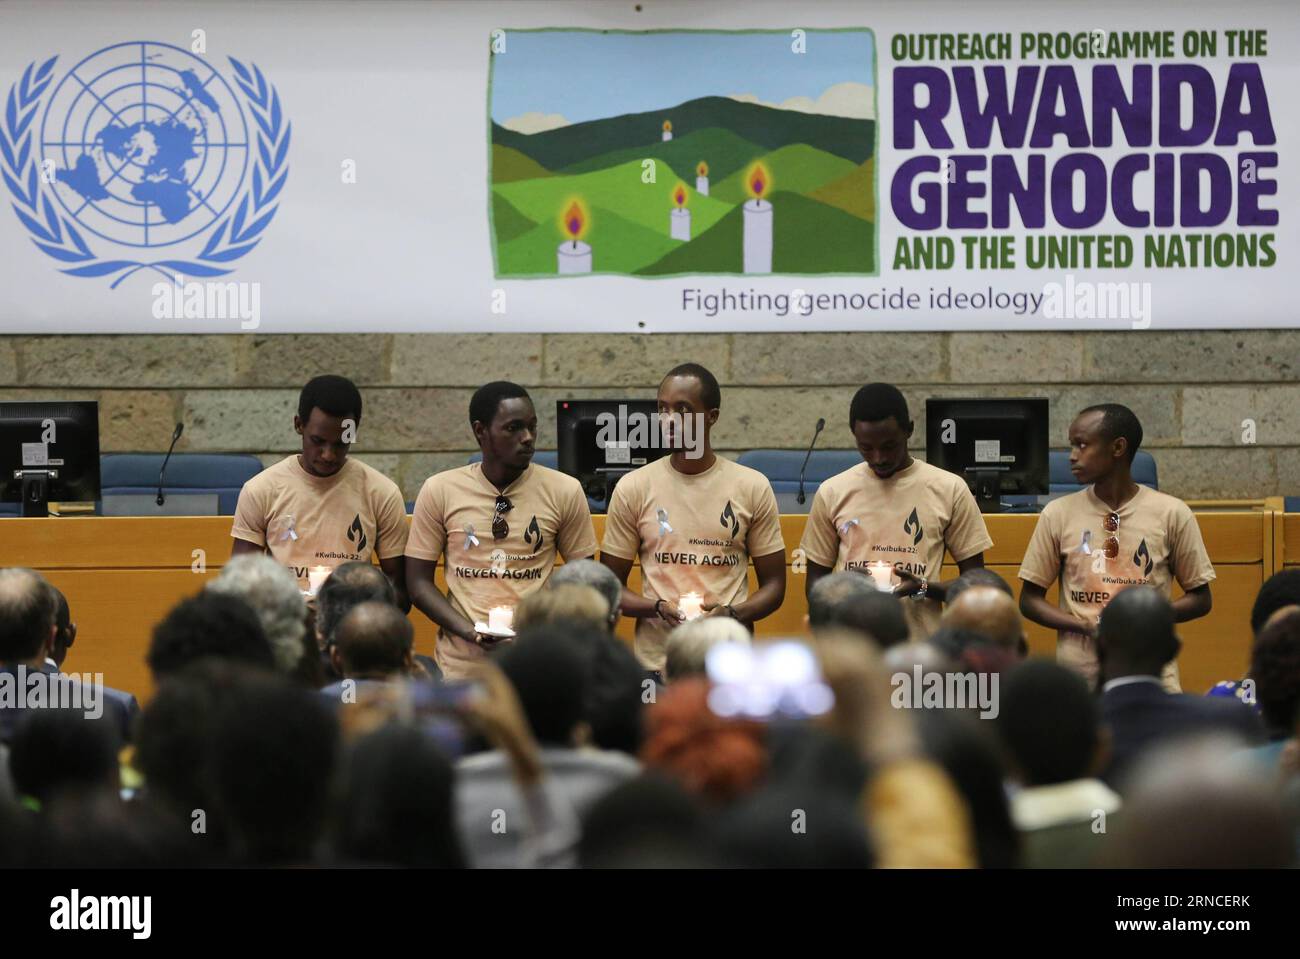 (160407) -- NAIROBI, 7 aprile 2016 -- gli adolescenti tengono le candele per piangere le vittime del genocidio del Ruanda, presso l'Ufficio delle Nazioni Unite a Nairobi, nella capitale del Kenya, Nairobi, il 7 aprile 2016. Il 7 aprile è la giornata internazionale della riflessione sul genocidio ruandese, che segna il genocidio del 1994 in cui sono state uccise più di un milione di persone, principalmente Tutsi e hutu moderati. KENYA-NAIROBI-RWANDA GENOCIDIO PanxSiwei PUBLICATIONxNOTxINxCHN 160407 Nairobi 7 aprile 2016 gli adolescenti tengono candele a Morne vittime del genocidio del Ruanda PRESSO l'Ufficio delle Nazioni Unite A Nairobi, nel Capo del Kenya Foto Stock